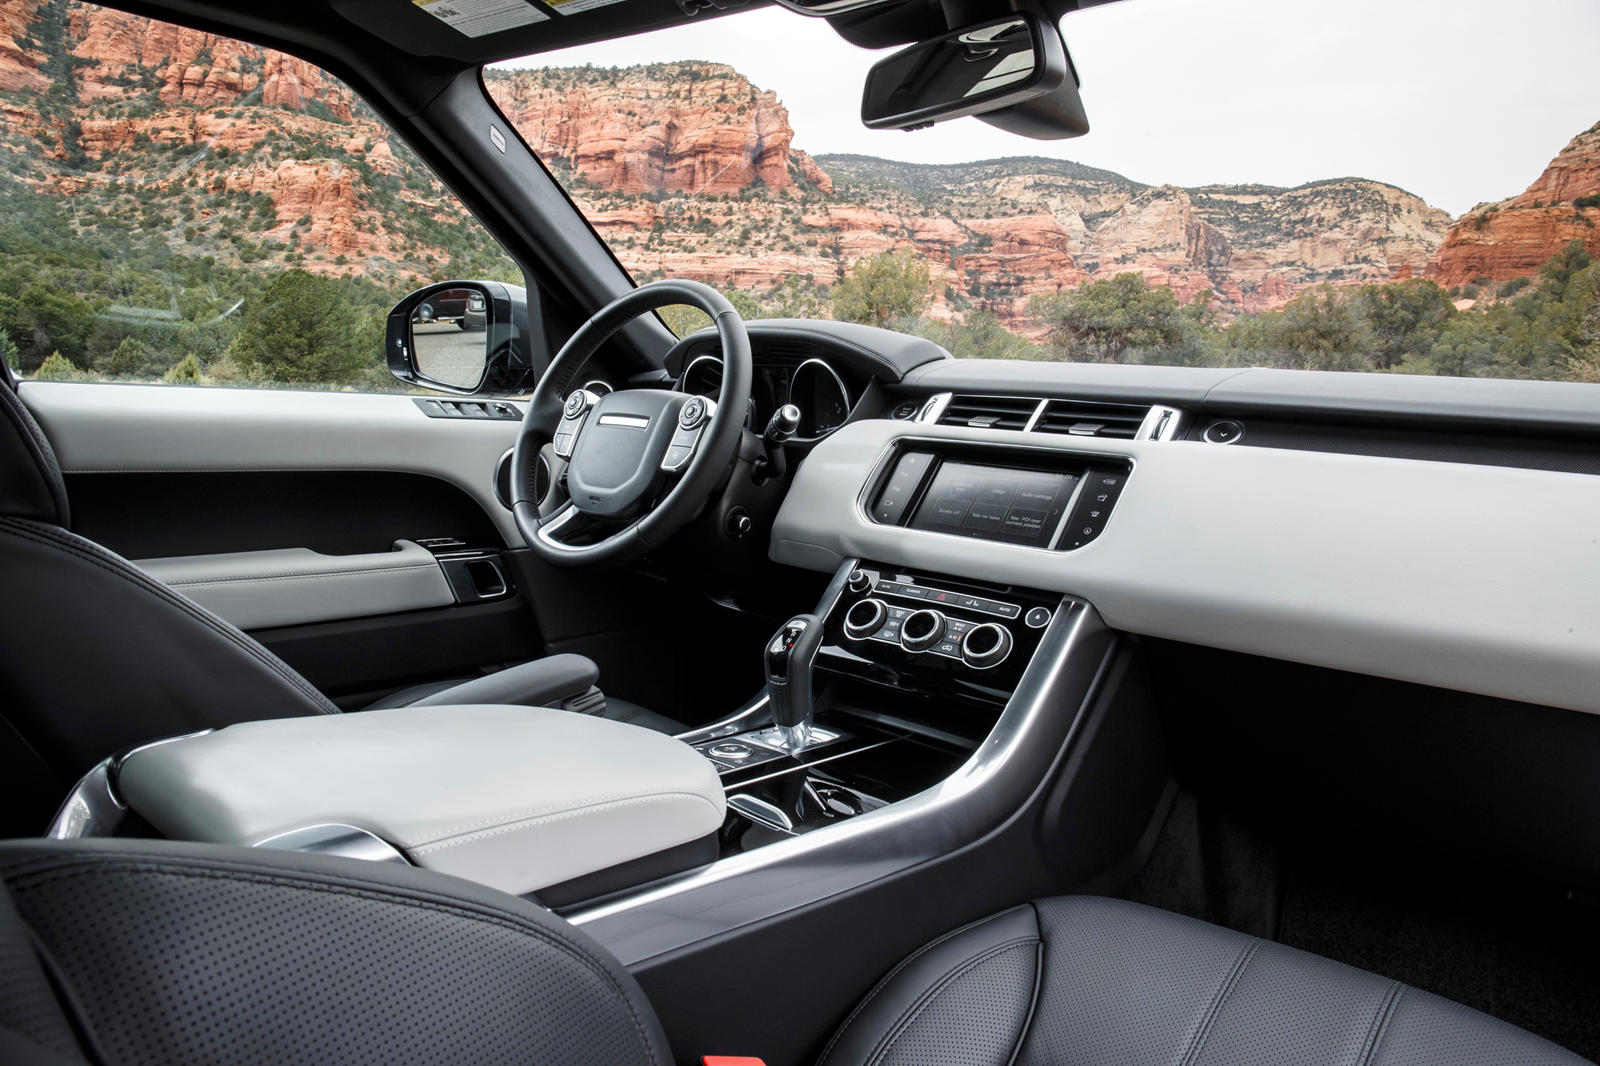 2015 Land Rover Range Rover Sport Interior Photos | CarBuzz